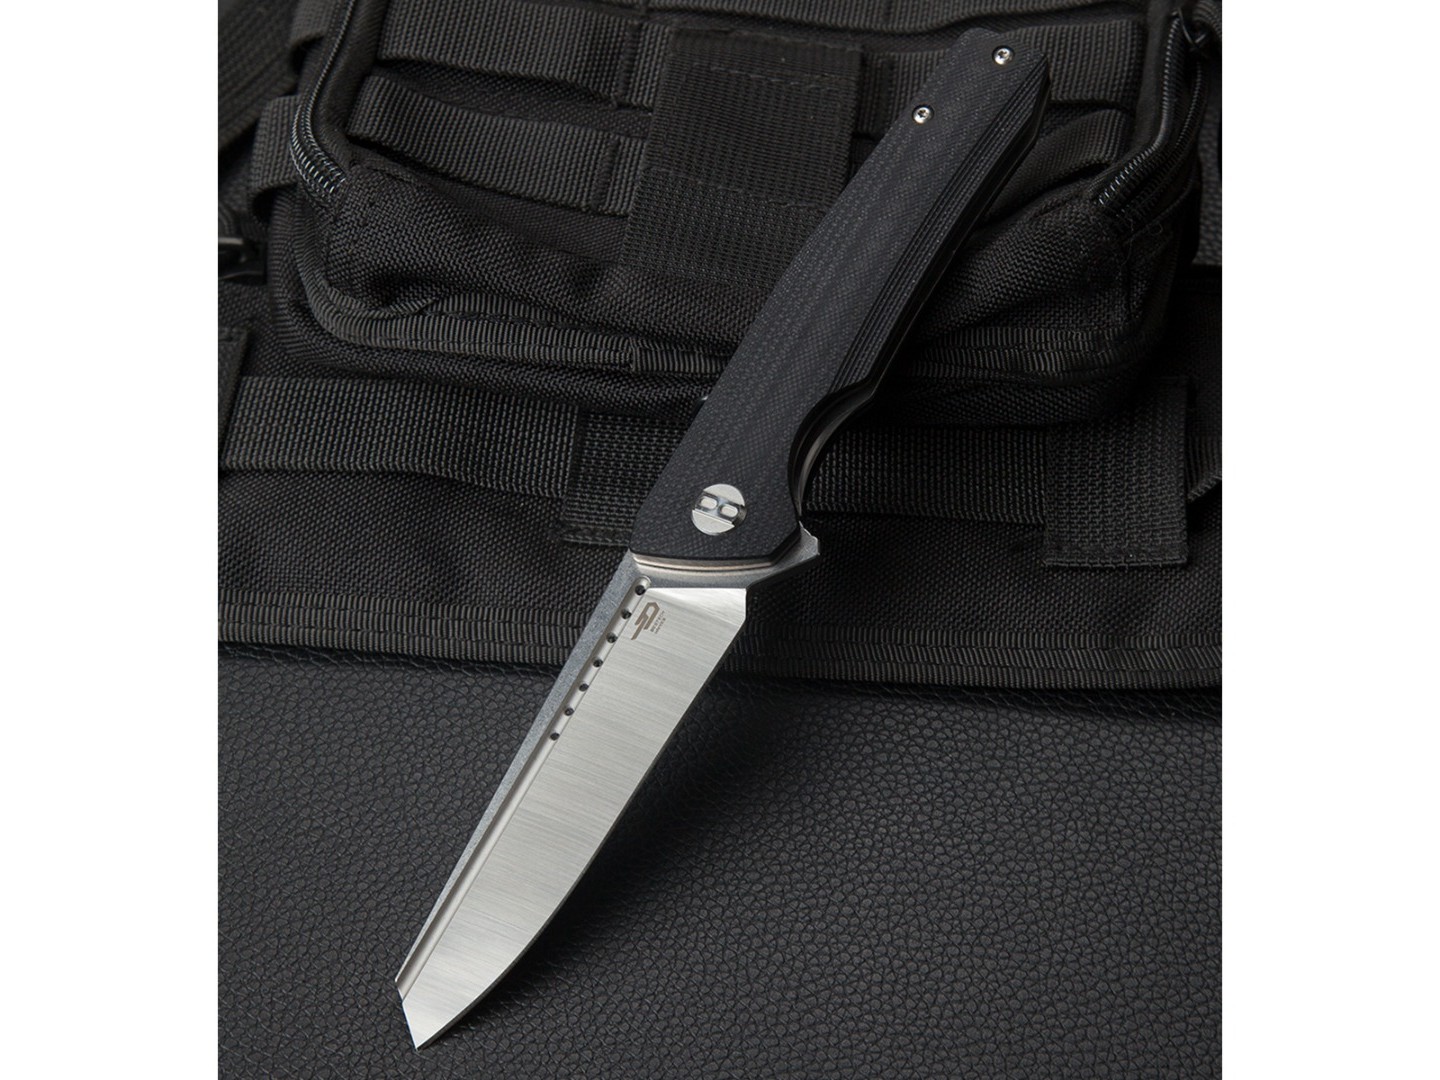 Нож Bestech Slyther BG51A-1 сталь 14C28N satin, рукоять G10 black